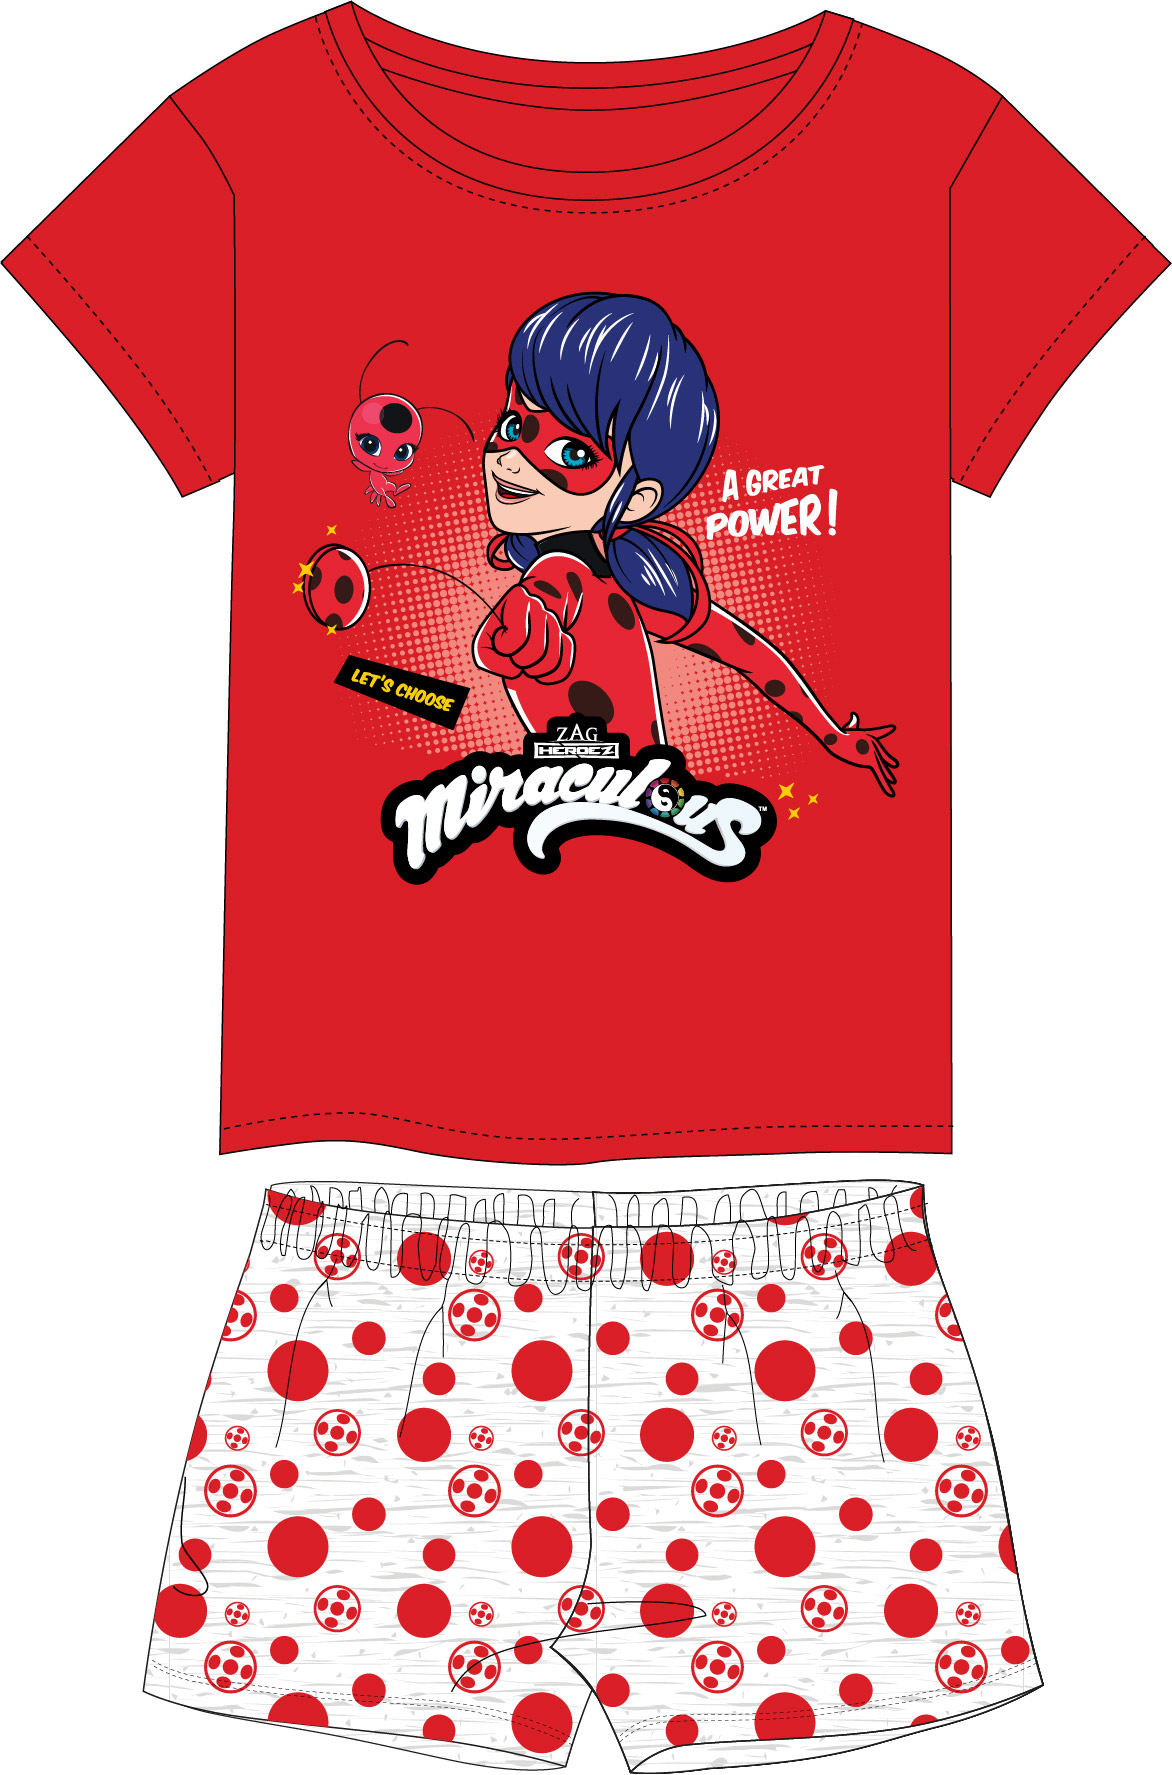 Dívčí pyžamo - Kouzelná Beruška Miraculous 5204245, červená / šedý melír Barva: Červená, Velikost: 128